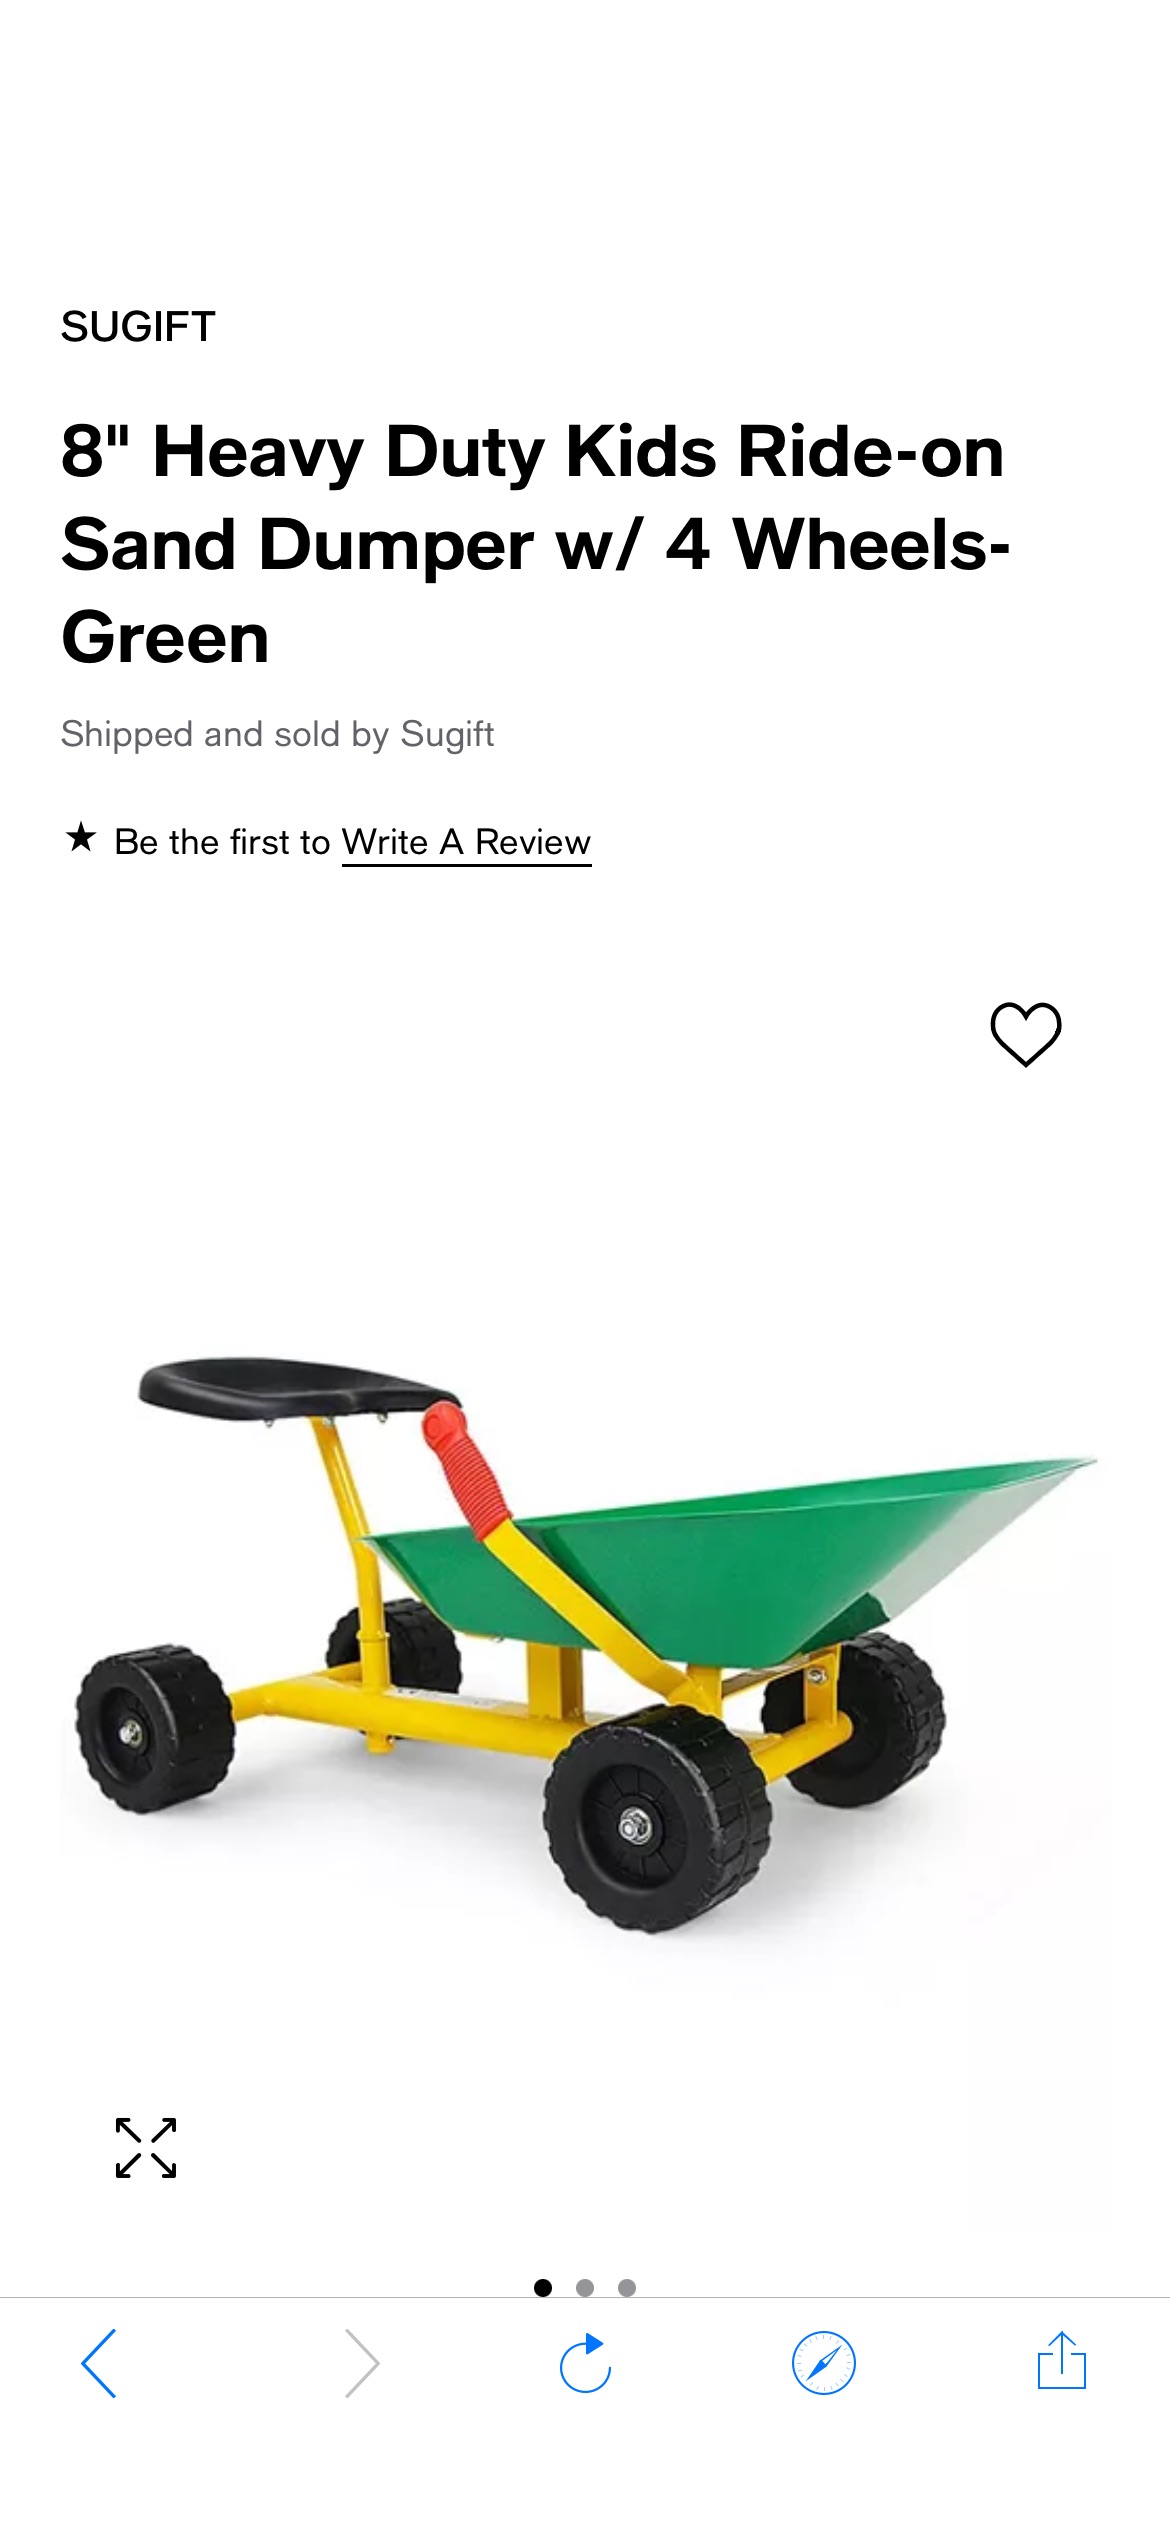 SUGIFT 8" Heavy Duty Kids Ride-on Sand Dumper w/ 4 Wheels-Green - Macy's 儿童车